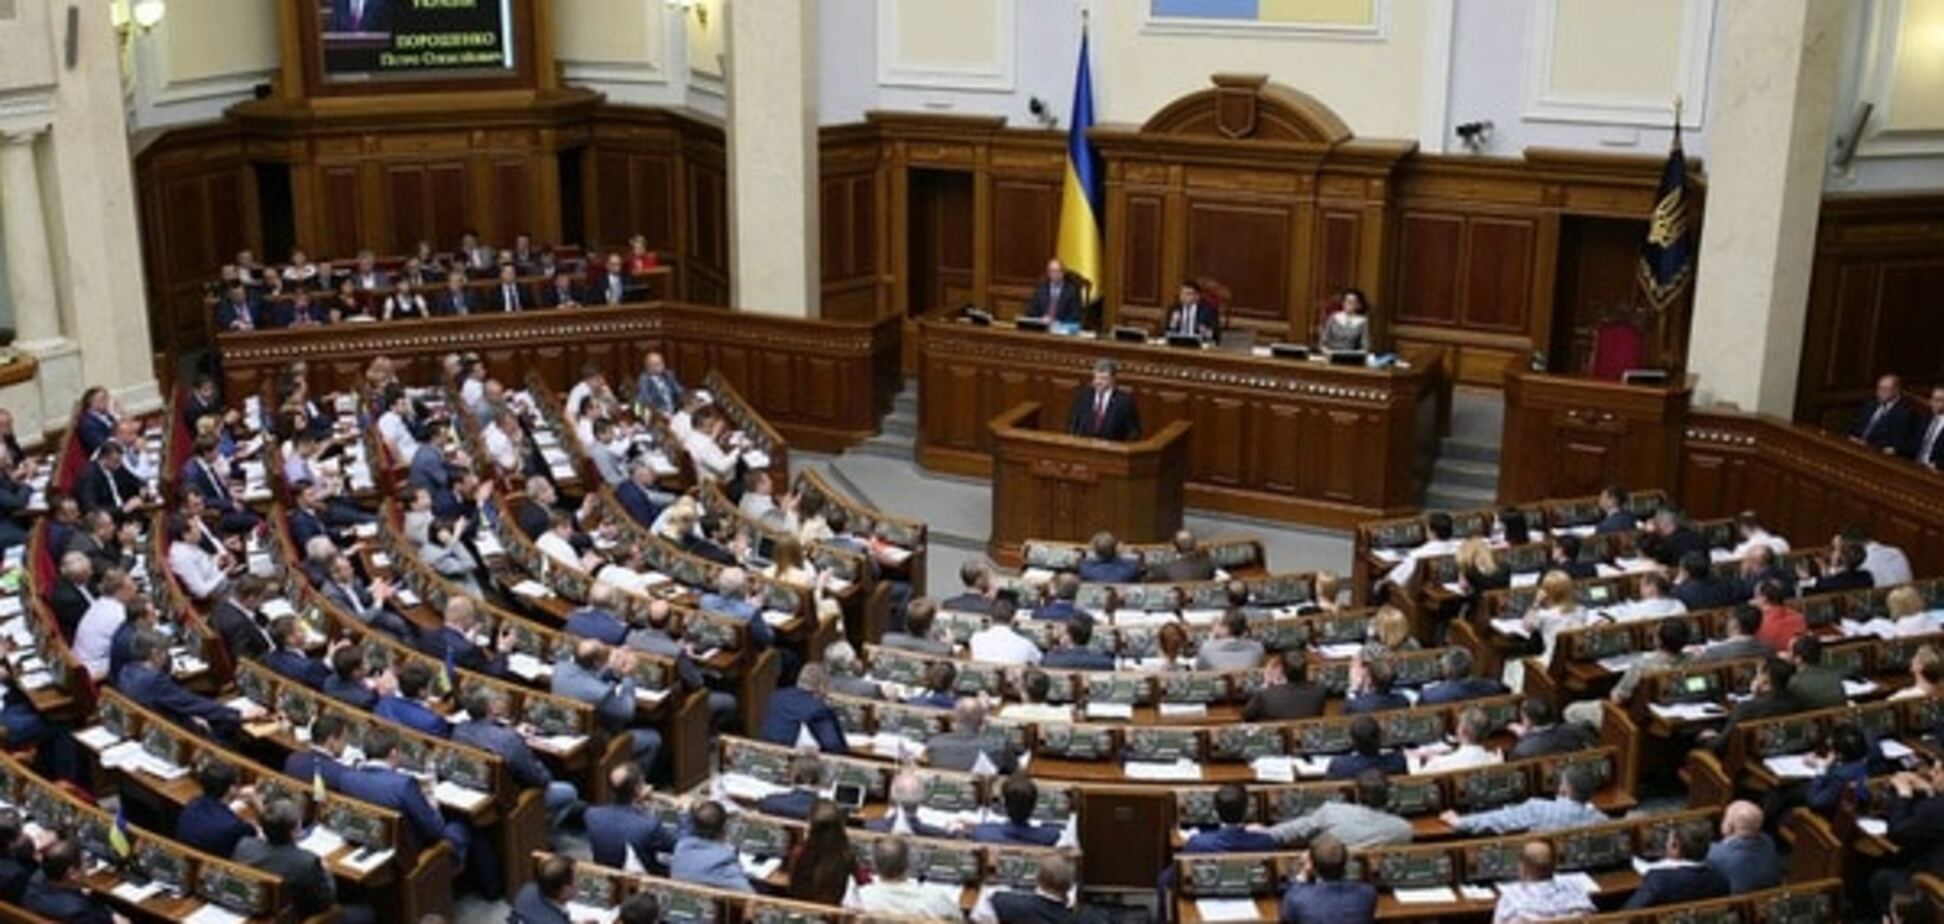 Верховная Рада при Президенте Украины